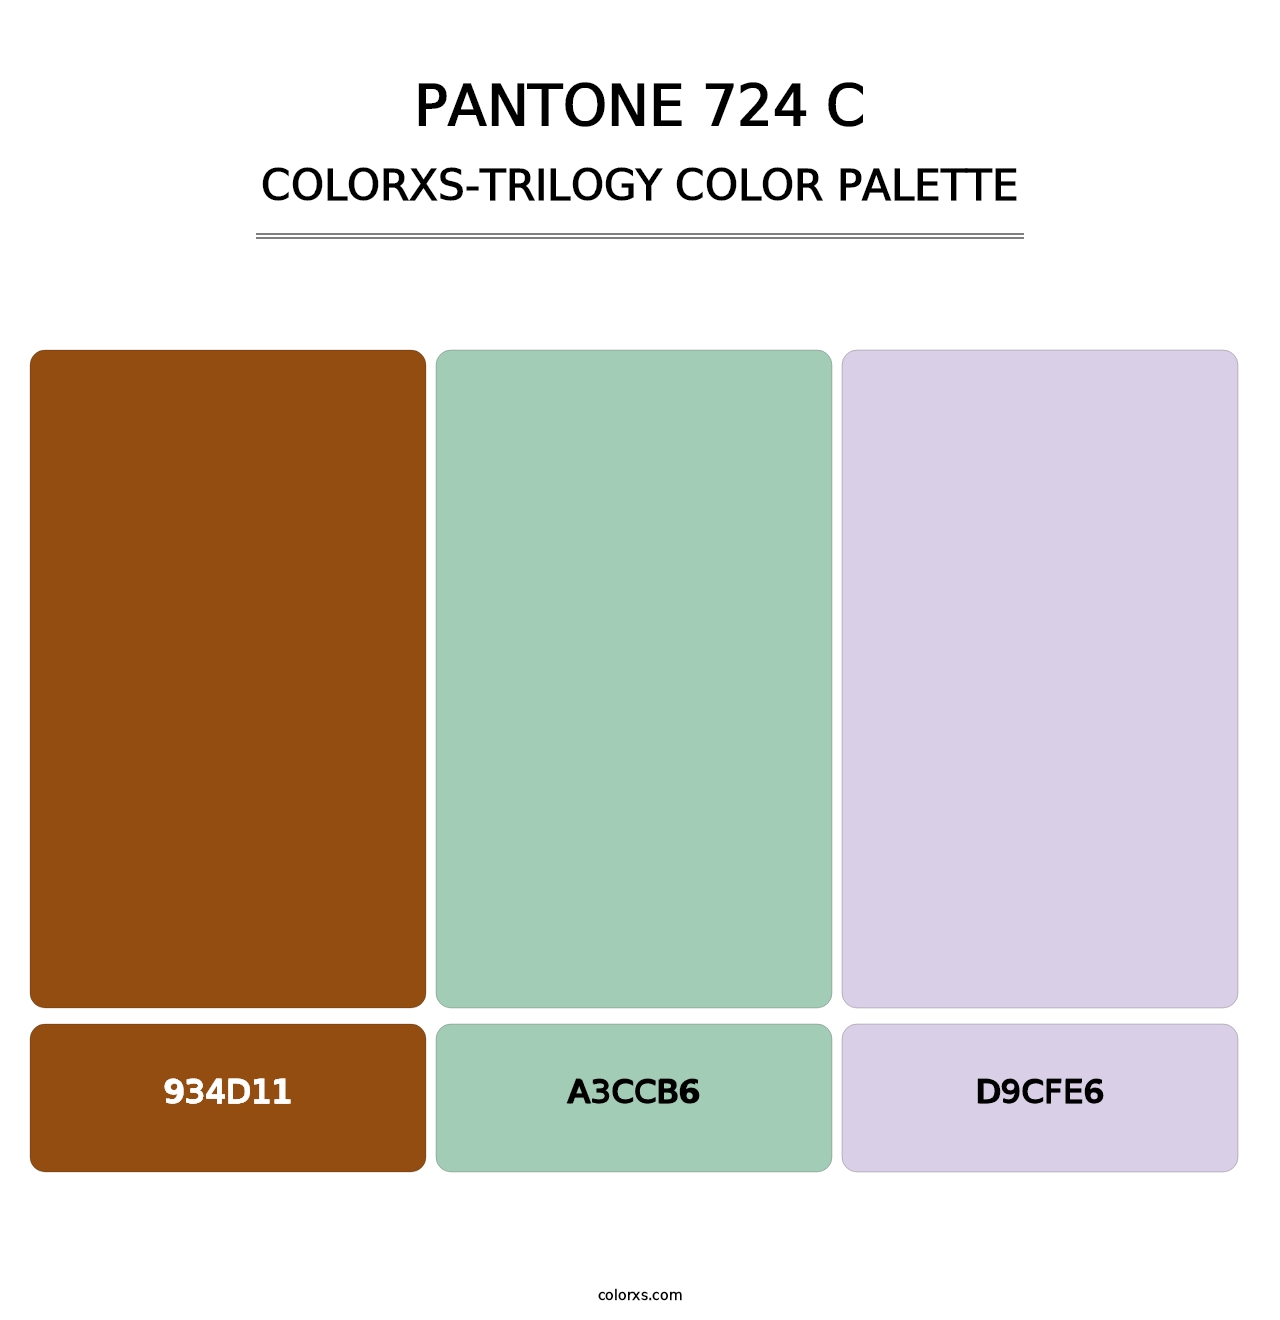 PANTONE 724 C - Colorxs Trilogy Palette